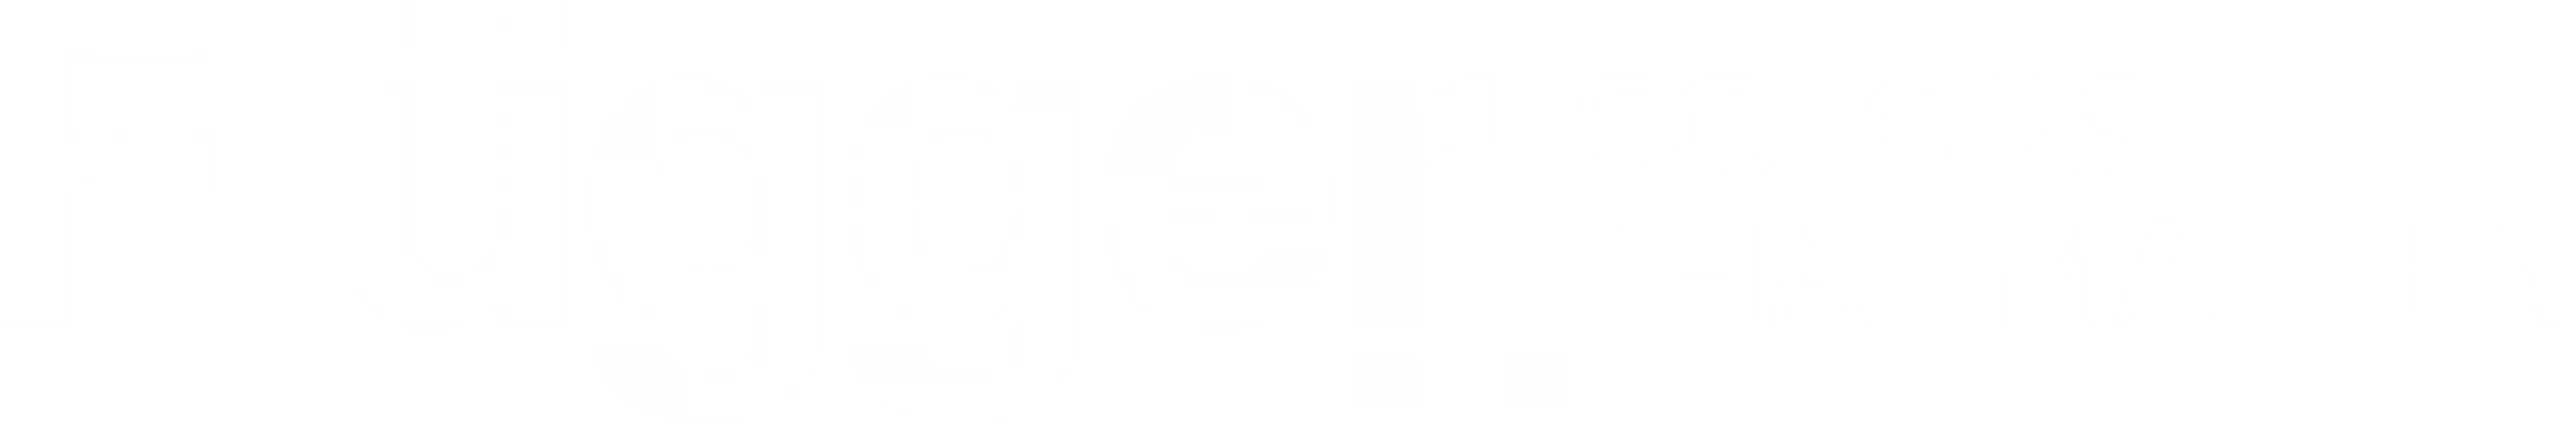 fluegger logo